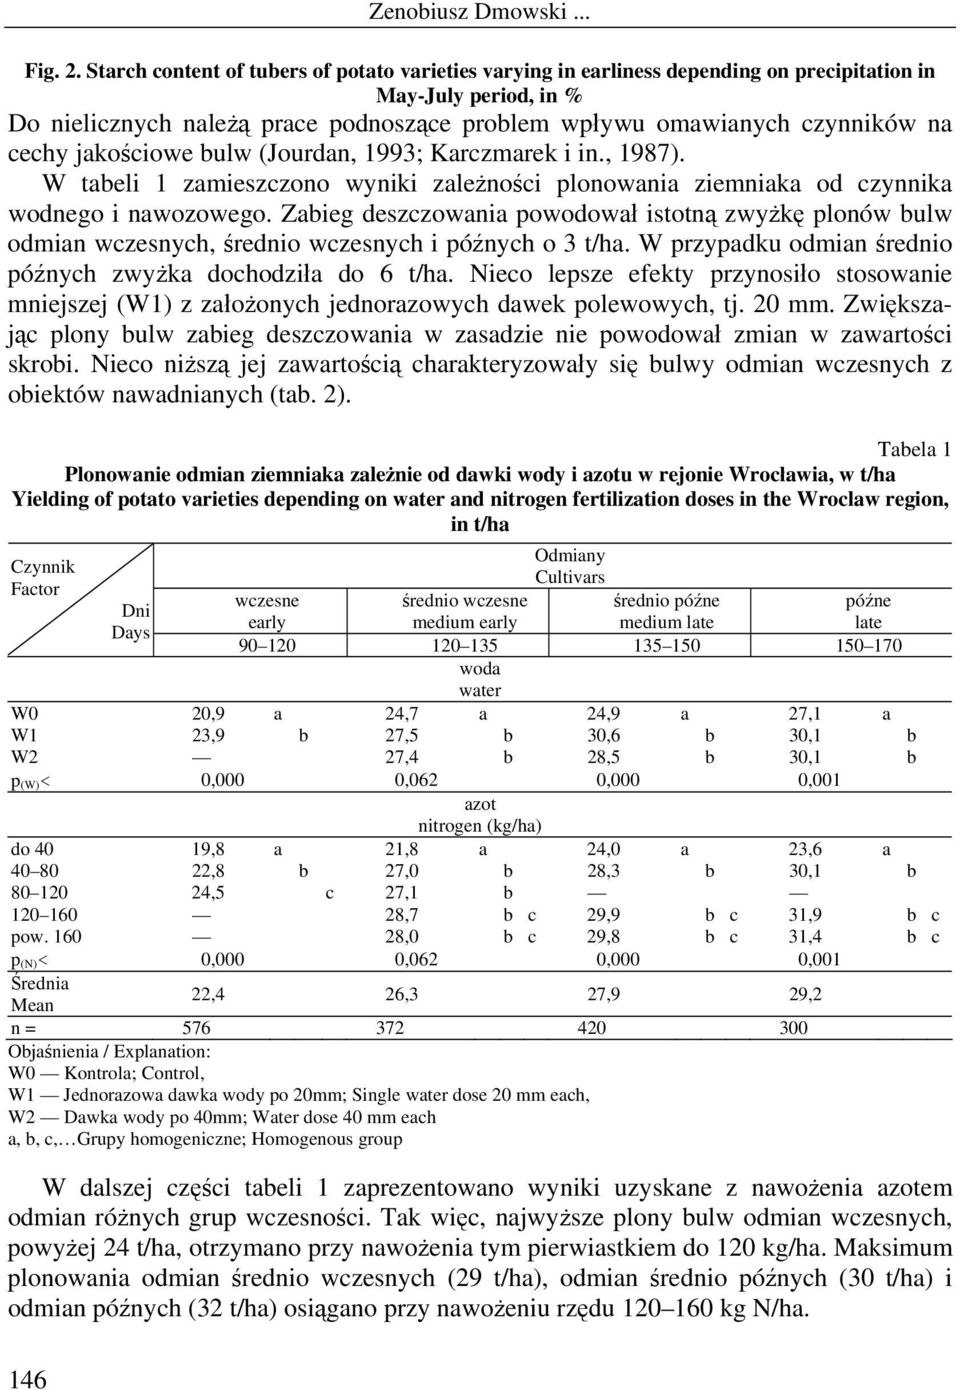 cechy jakościowe bulw (Jourdan, 1993; Karczmarek i in., 1987). W tabeli 1 zamieszczono wyniki zależności plonowania ziemniaka od czynnika wodnego i nawozowego.